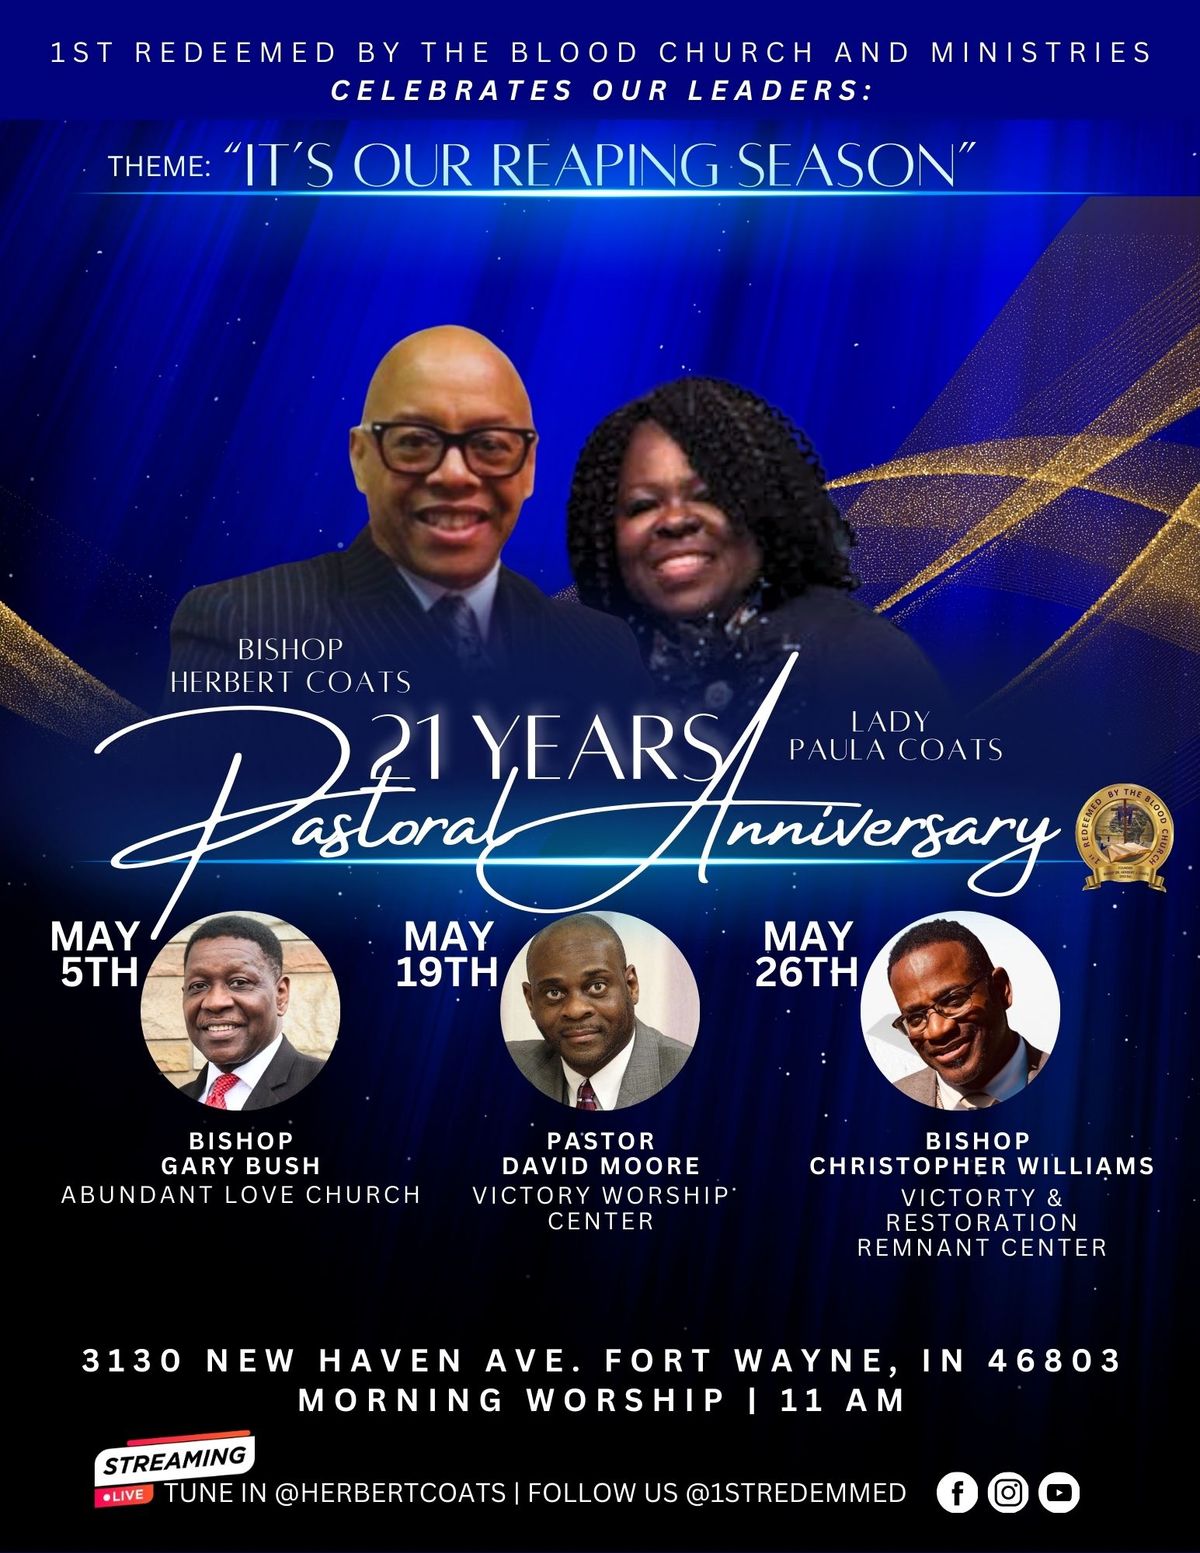 Celebrating 21 Years of Pastoring Anniversary